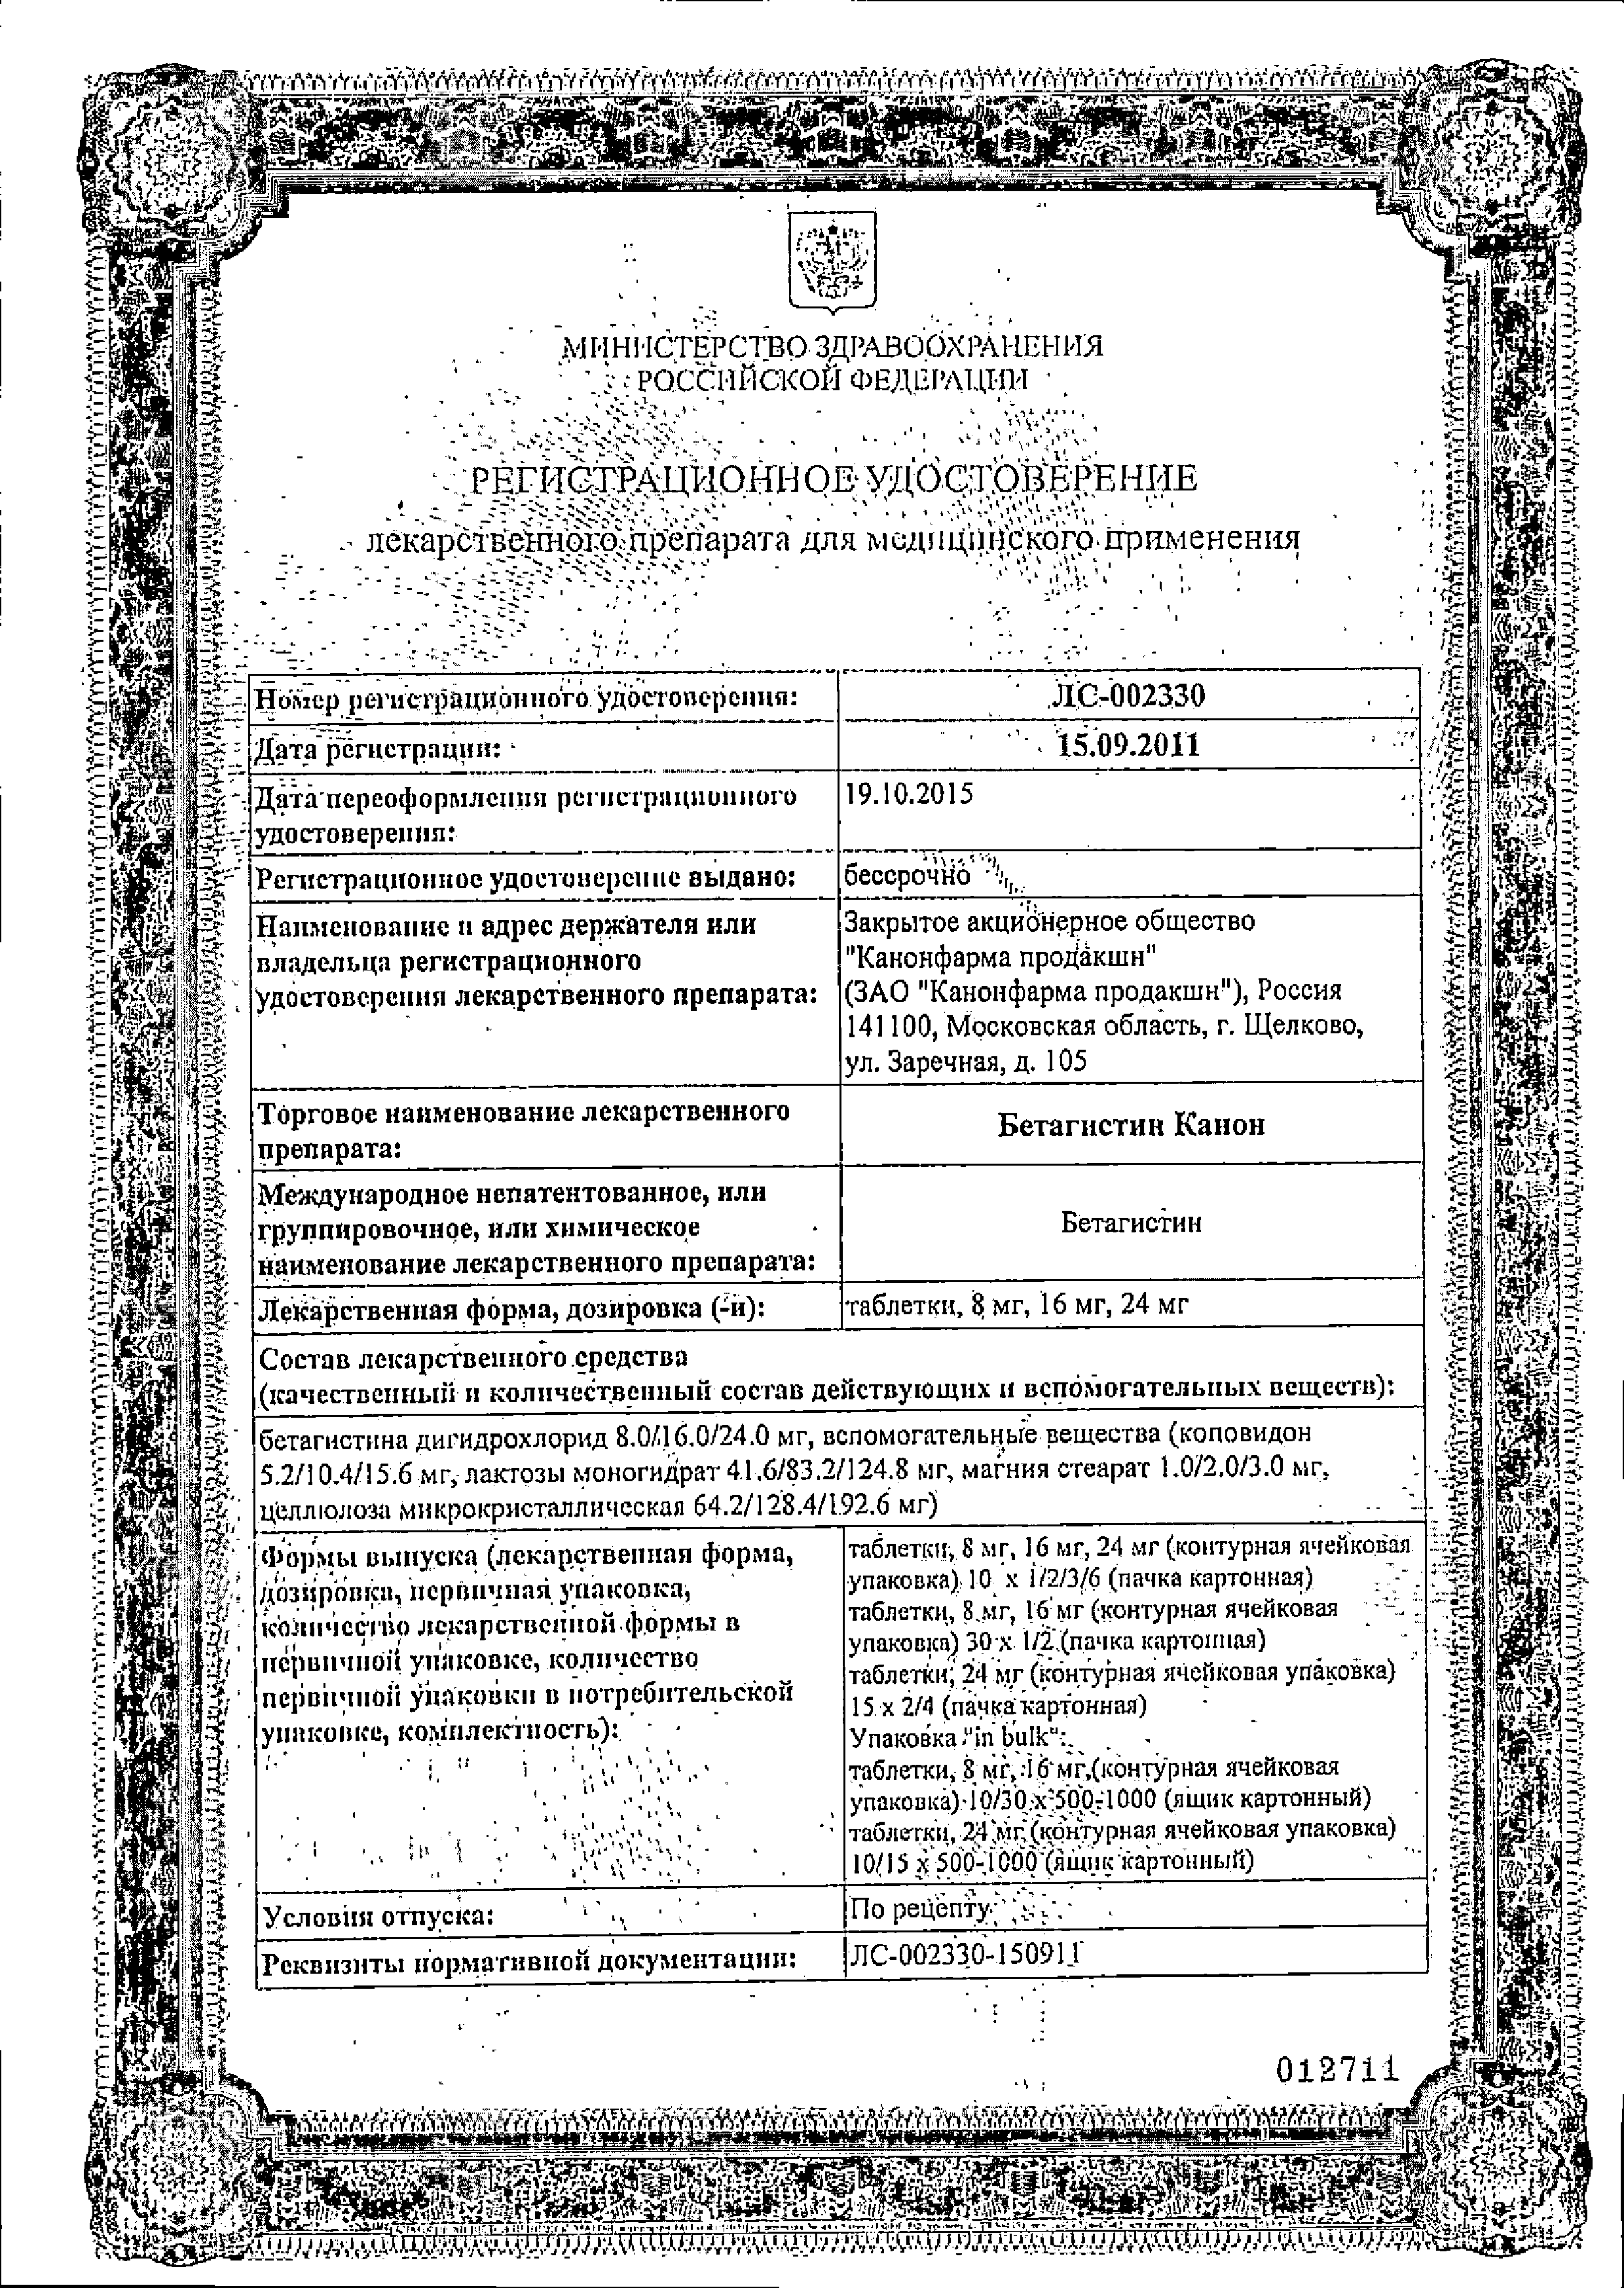 Бетагистин Канон сертификат